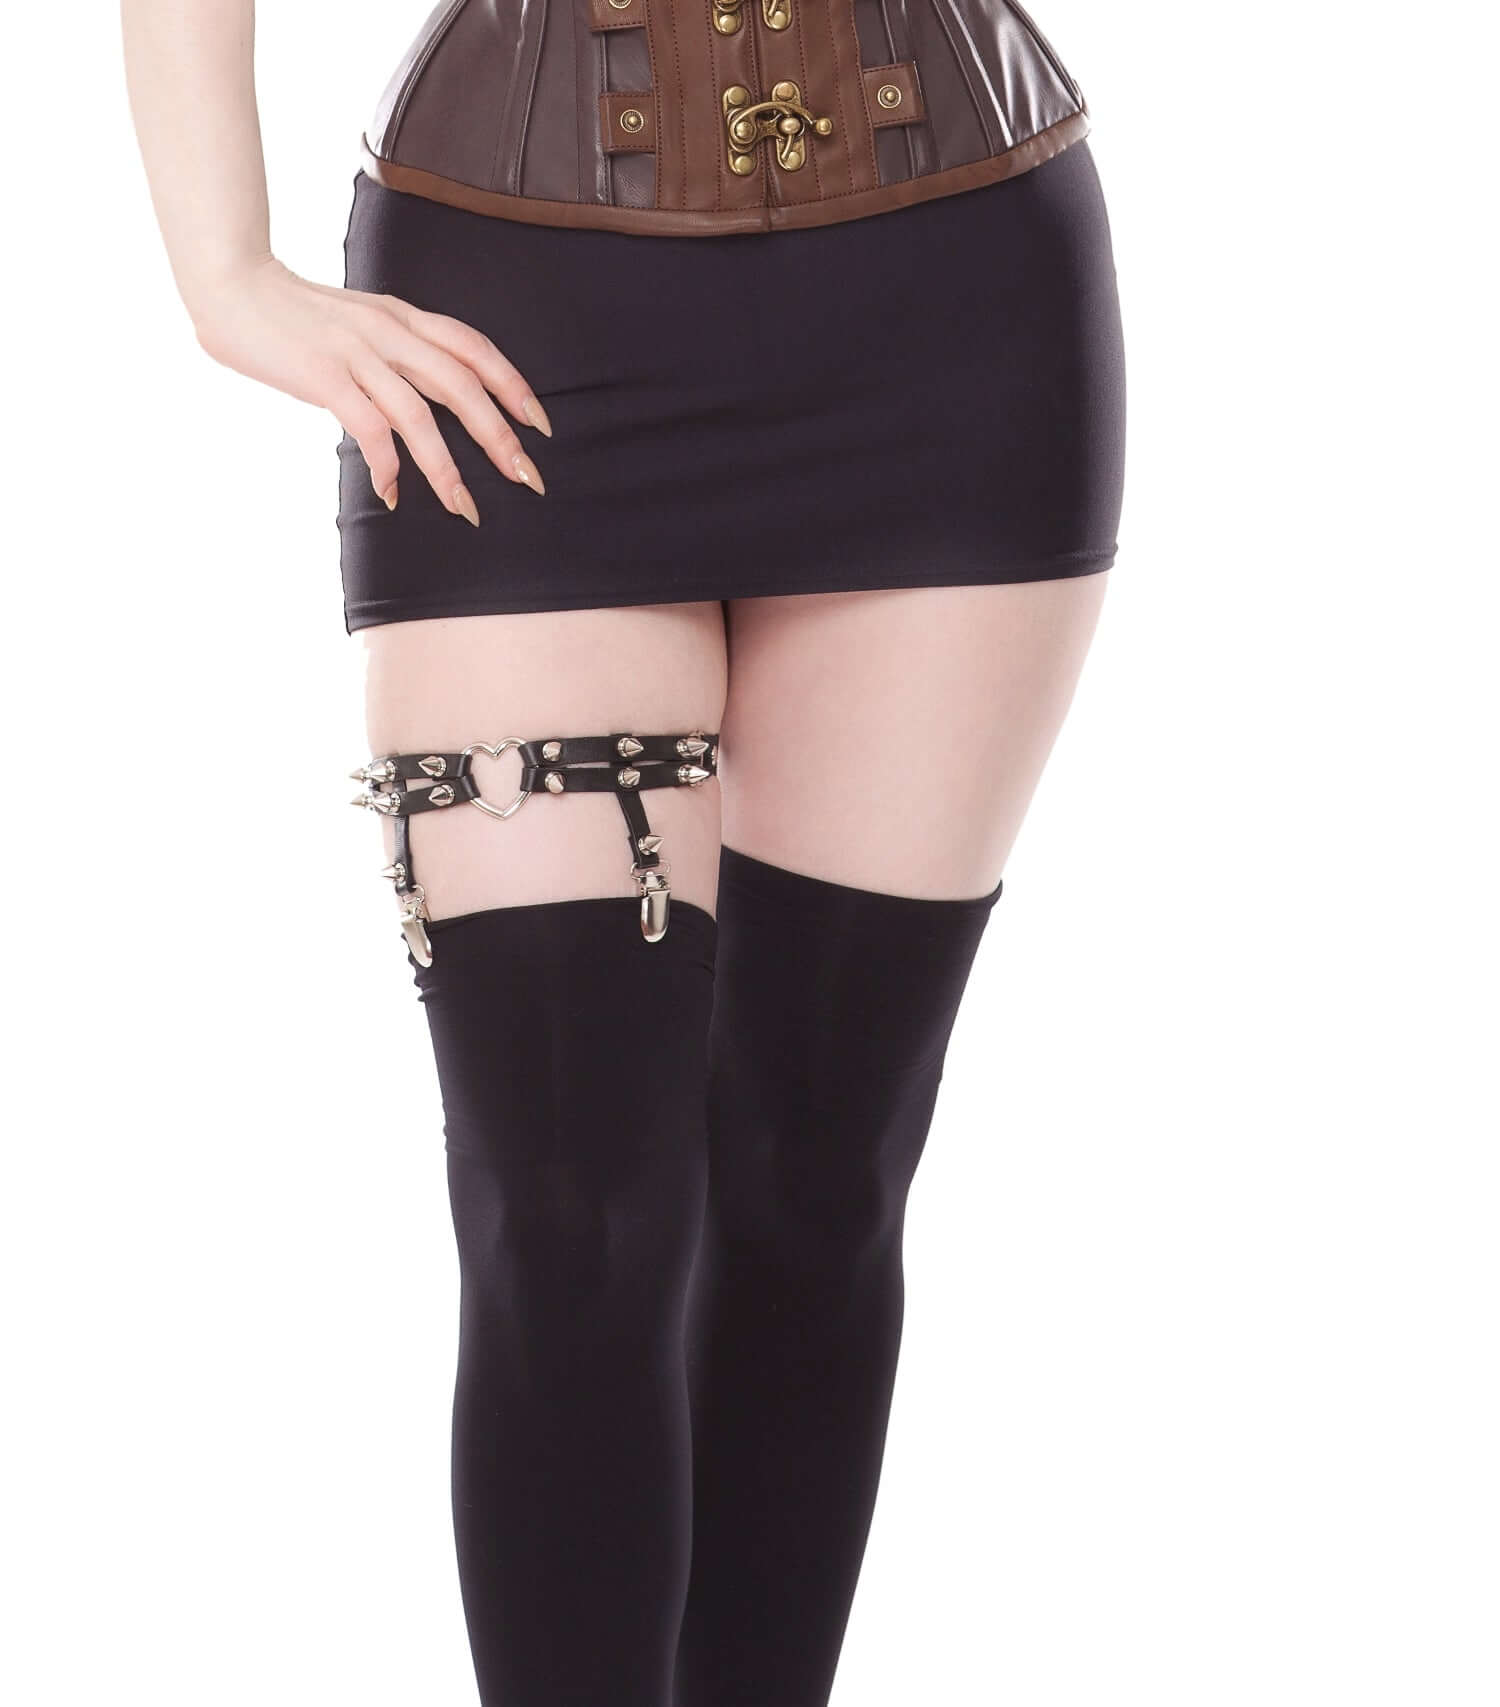 Playgirl Black Leg Garter Suspender